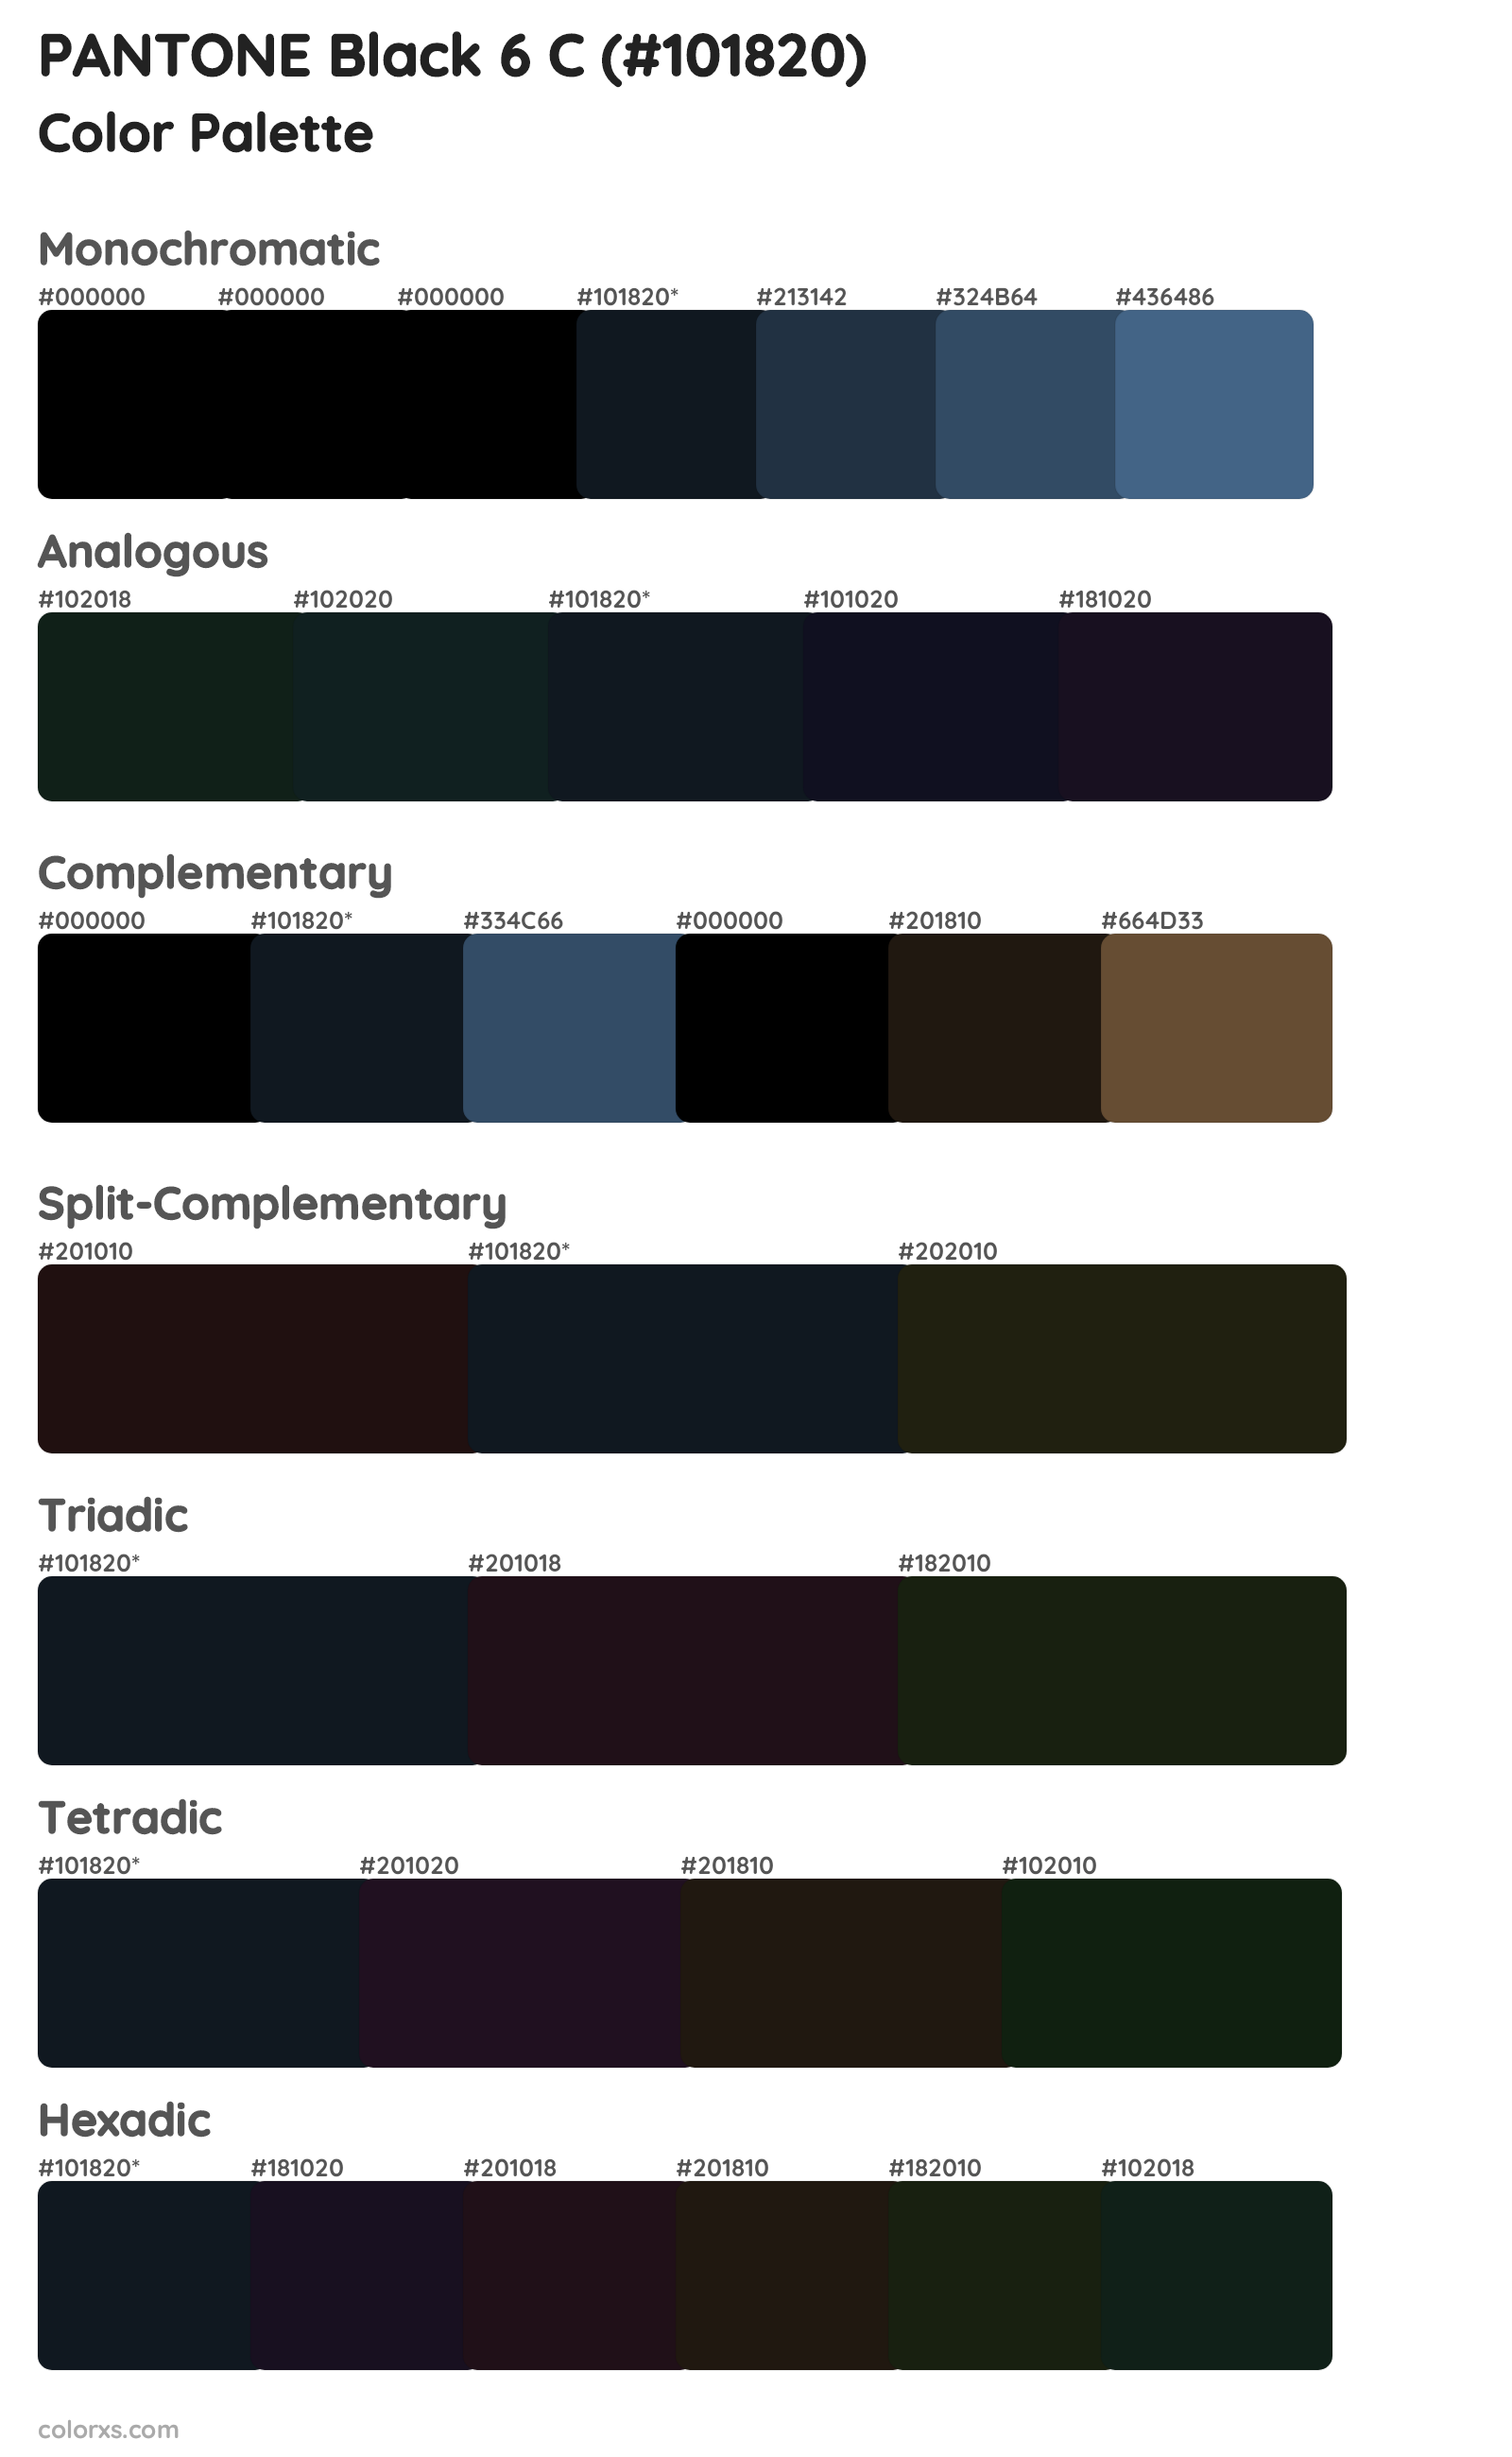 PANTONE Black 6 C Color Scheme Palettes